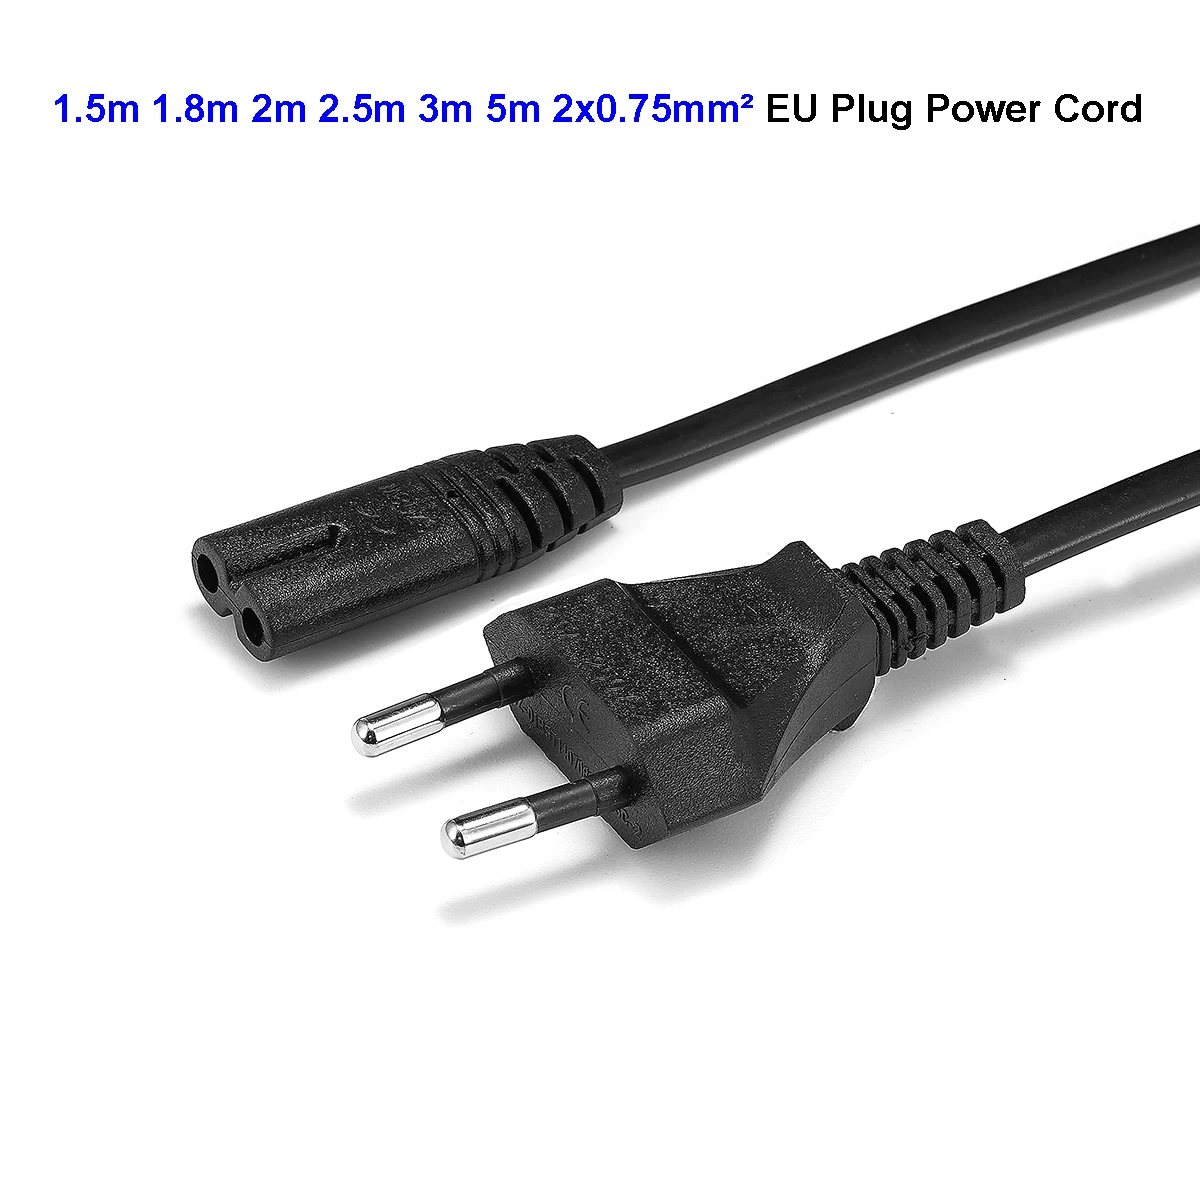 Ноутбук AC шнур питания ЕС Рисунок 8 кабель 10 футов 5 м IEC C7 питание зарядное устройство кабель для Dell LG Asus samsung ноутбук ТВ принтер